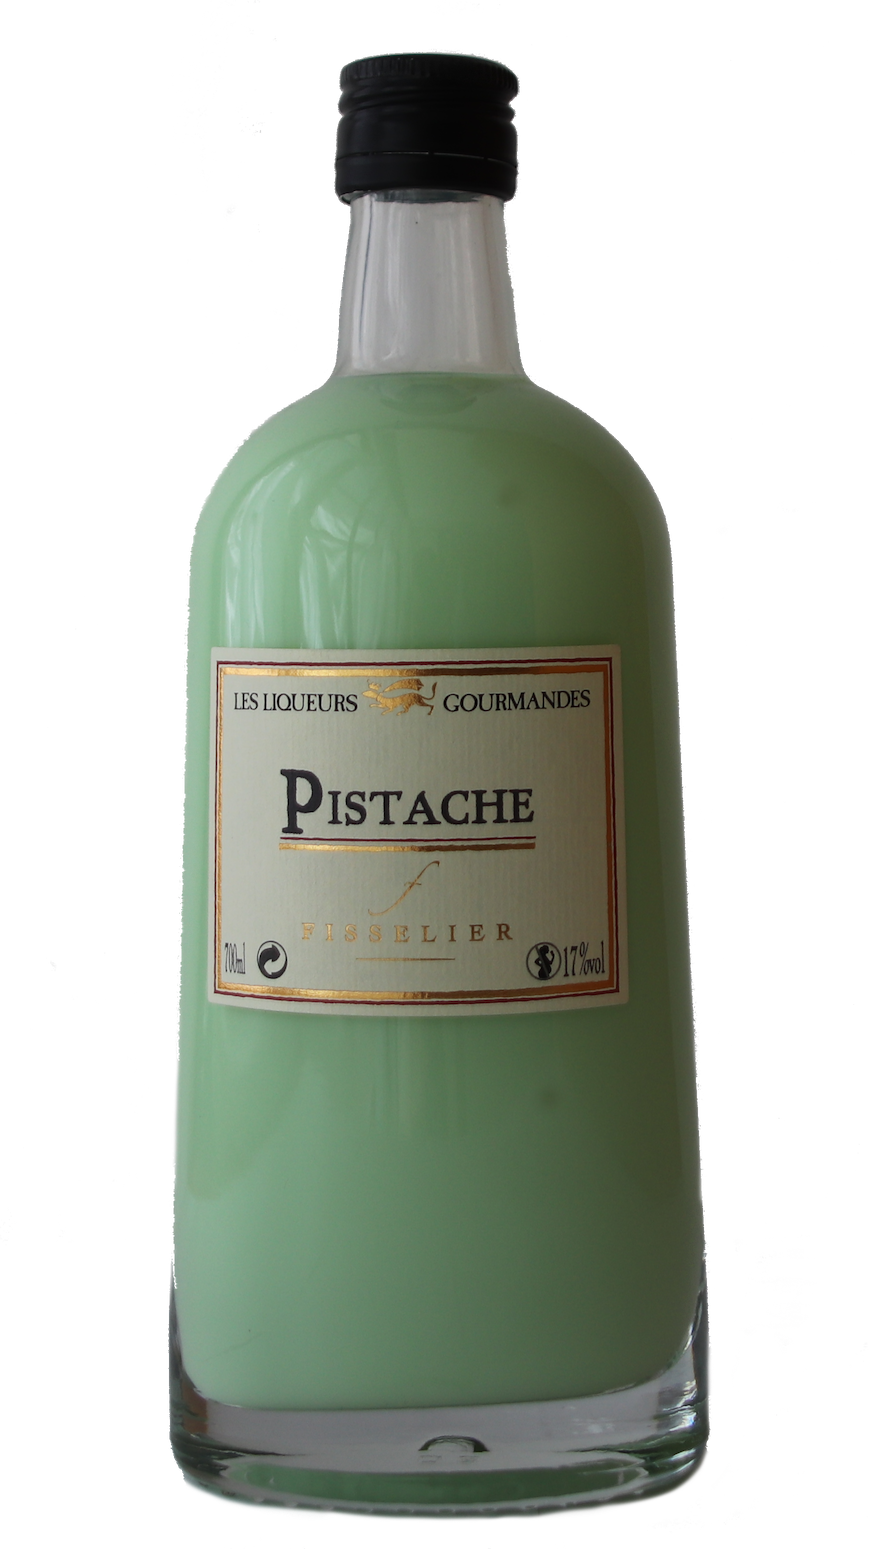 Jacques Fisselier - Liqueur Pistache (Pistachio)